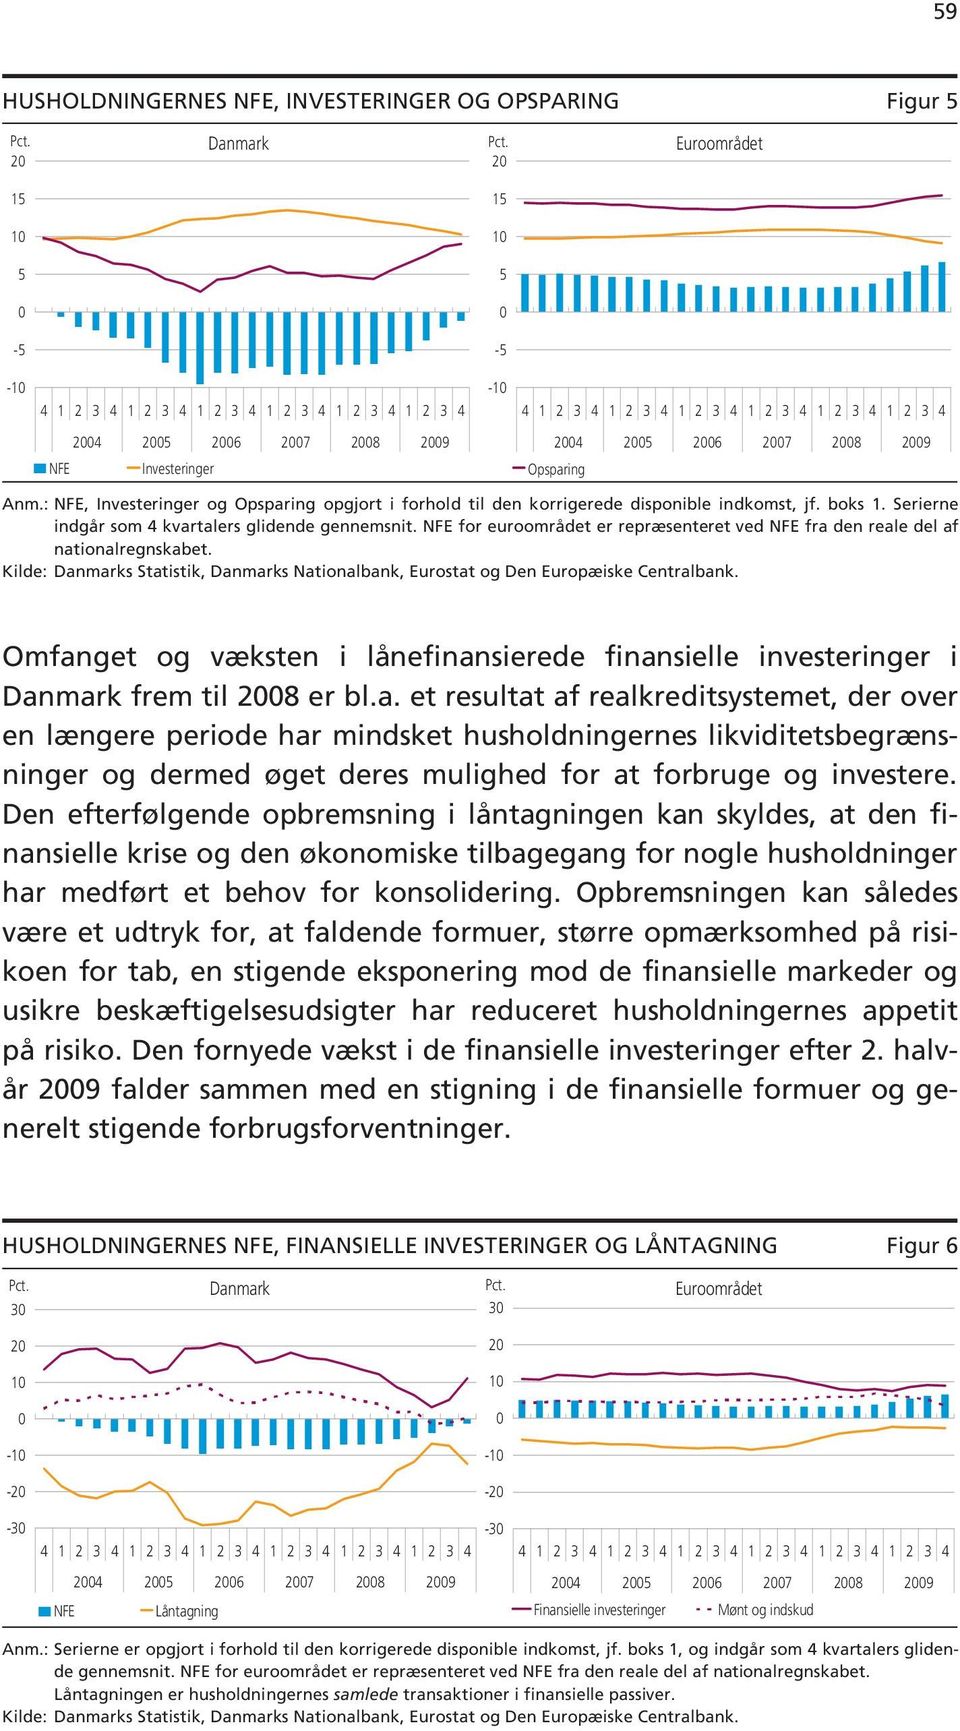 NFE for euroområdet er repræsenteret ved NFE fra den reale del af nationalregnskabet. Kilde: Danmarks Statistik, Danmarks Nationalbank, Eurostat og Den Europæiske Centralbank.